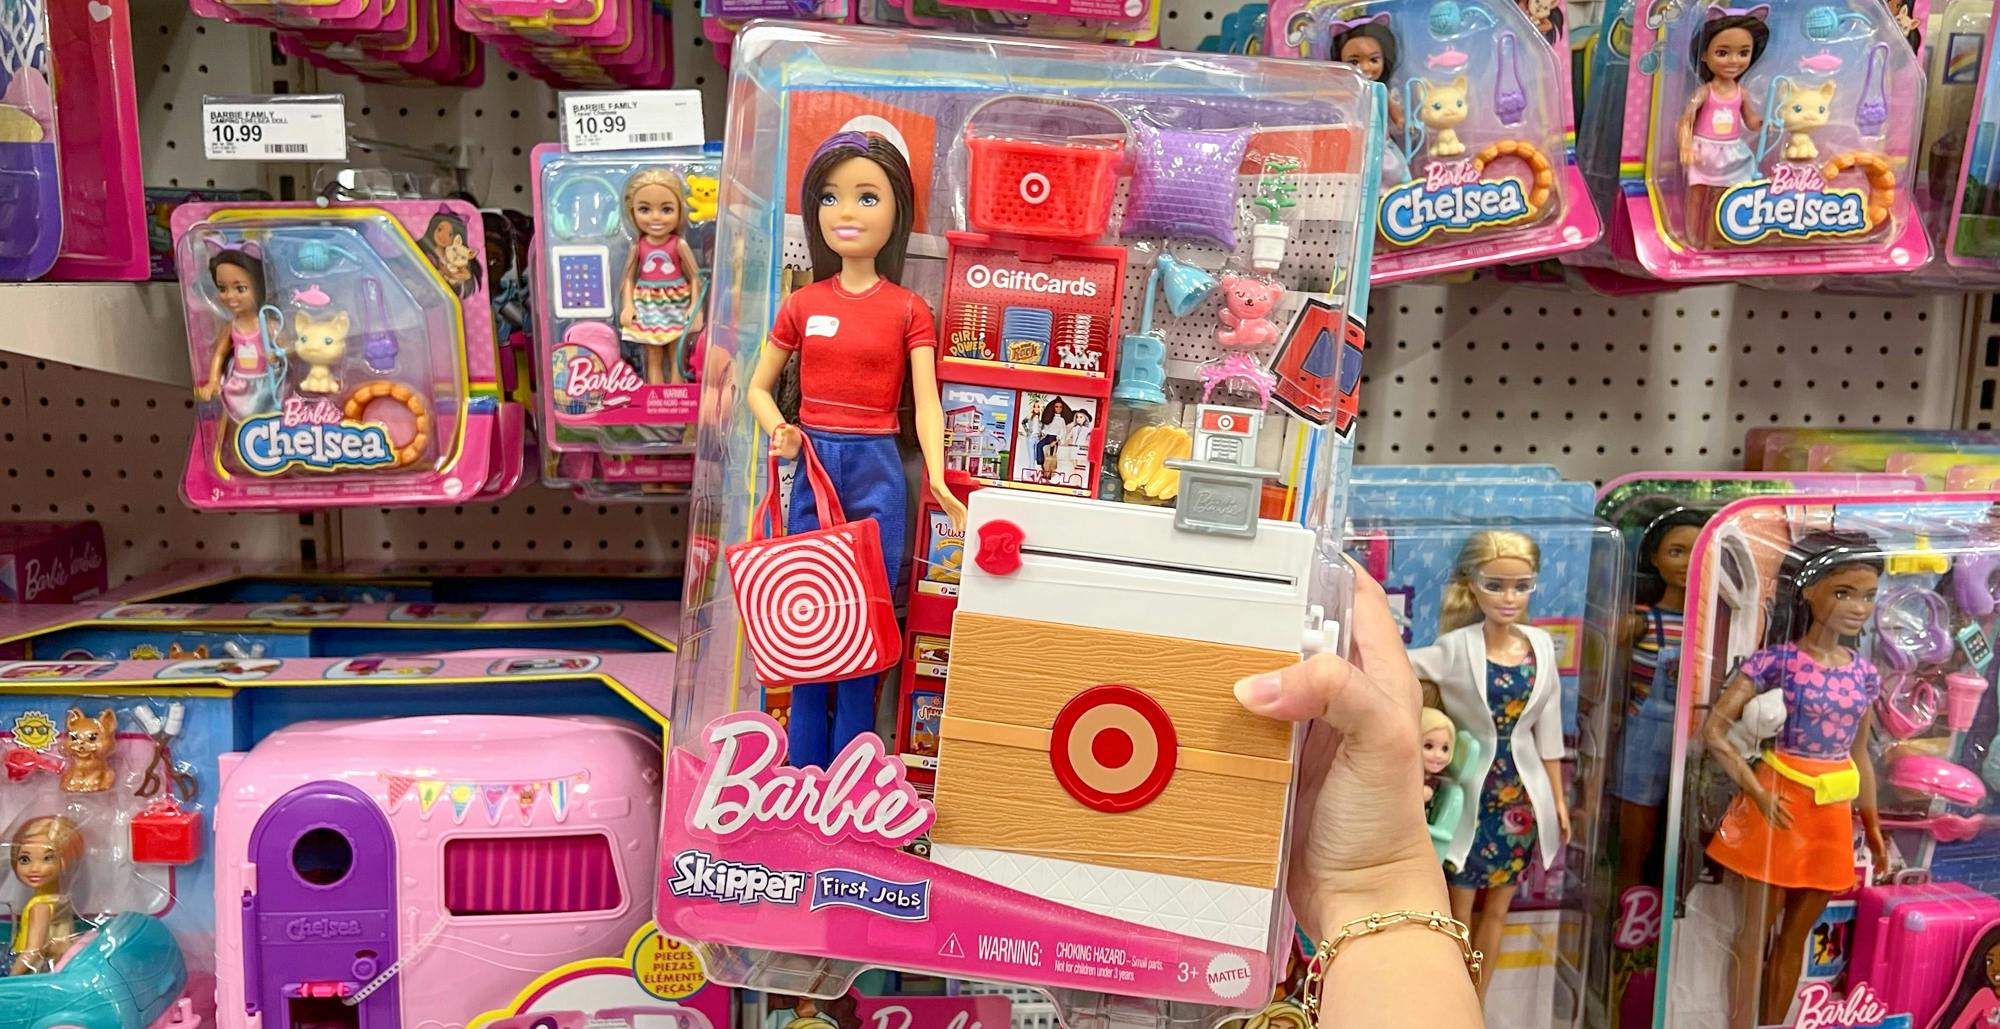 transaktion hvorfor korrelat Where to Find Target Barbie Doll (Skipper First Job Barbie) - The Krazy  Coupon Lady